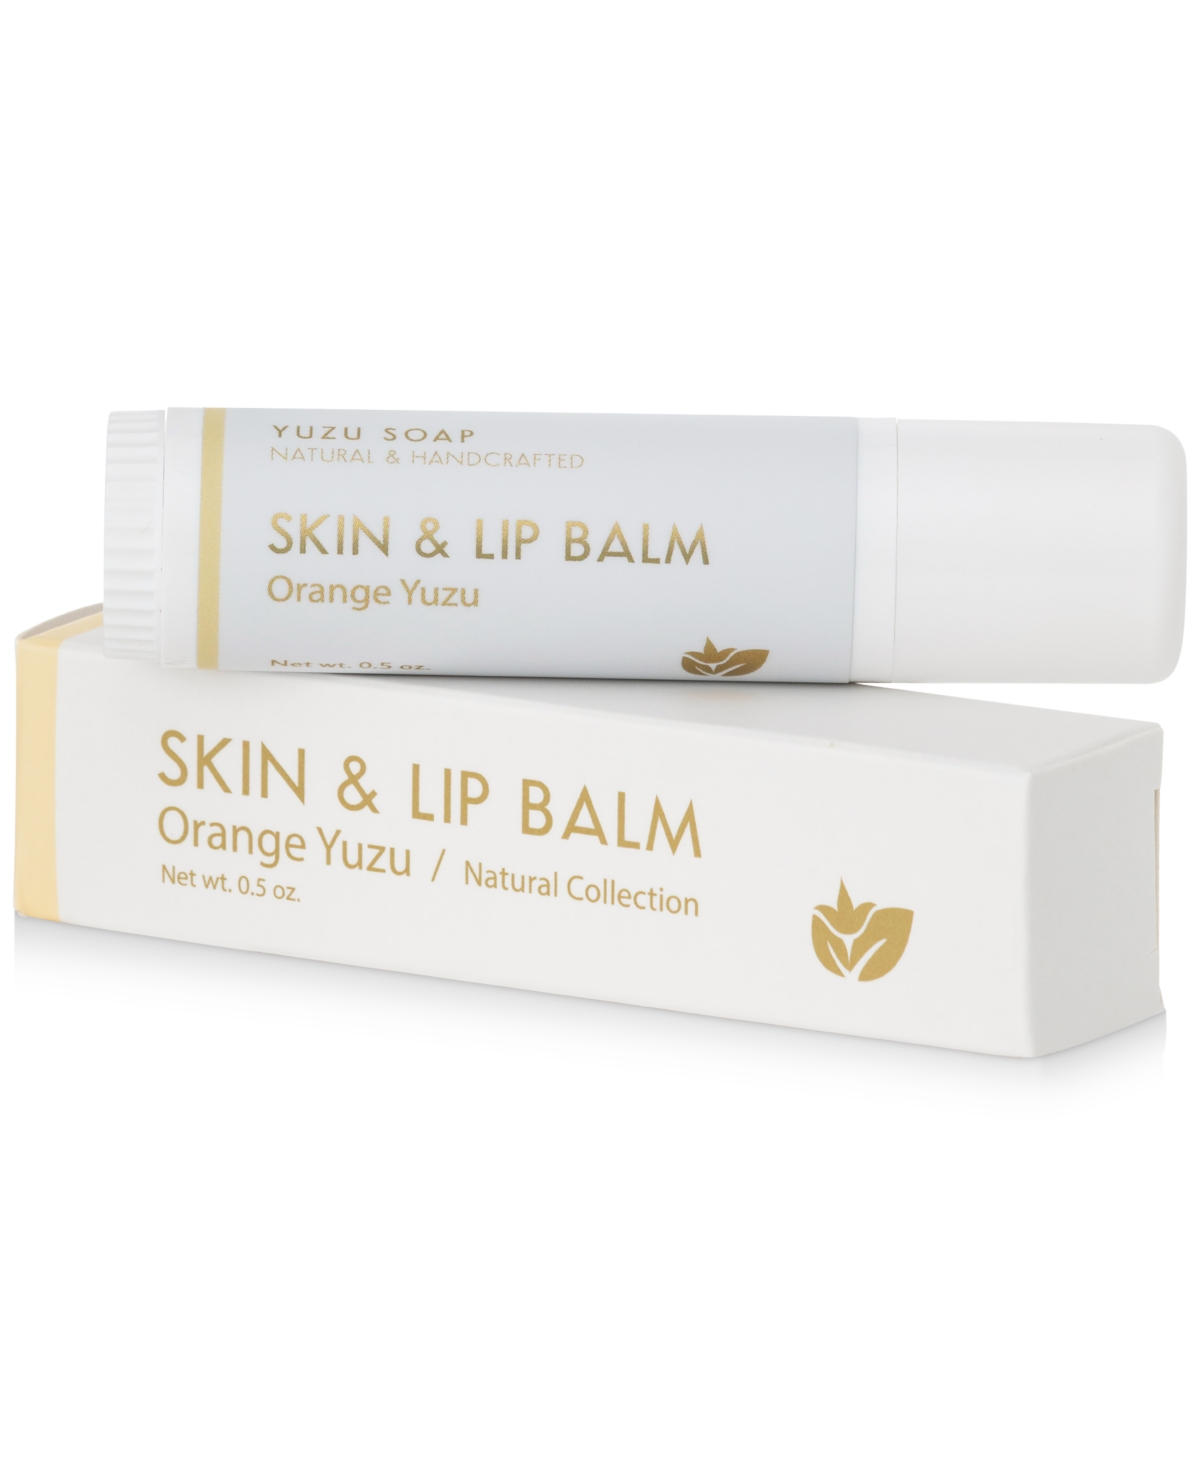 Skin & Lip Balm - Orange Yuzu, 0.5-oz.